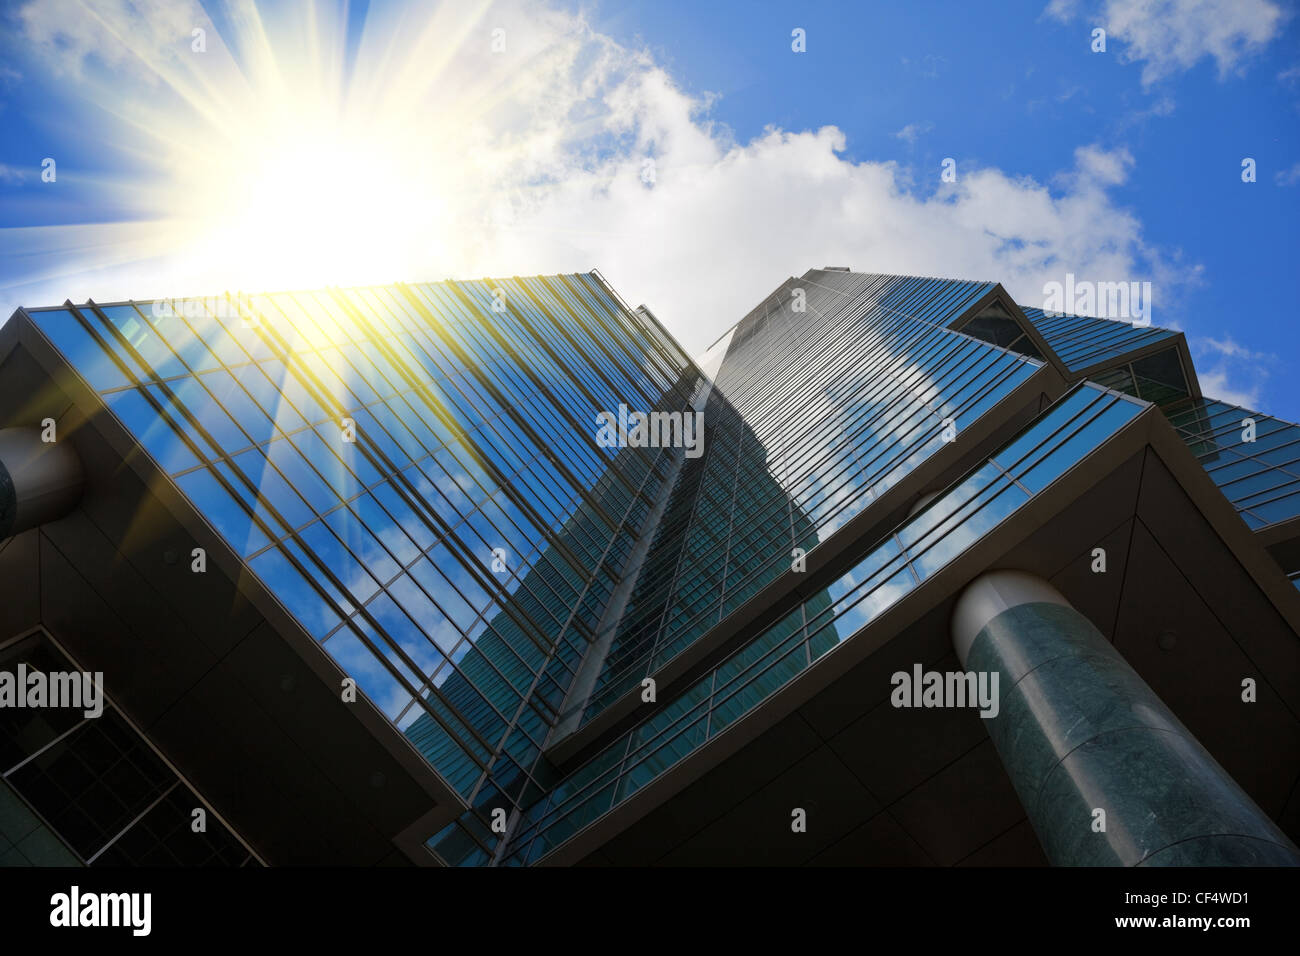 Immeuble de bureaux à miroir style high tech, ciel bleu avec des nuages reflétée à l'ici, rayons de soleil Banque D'Images